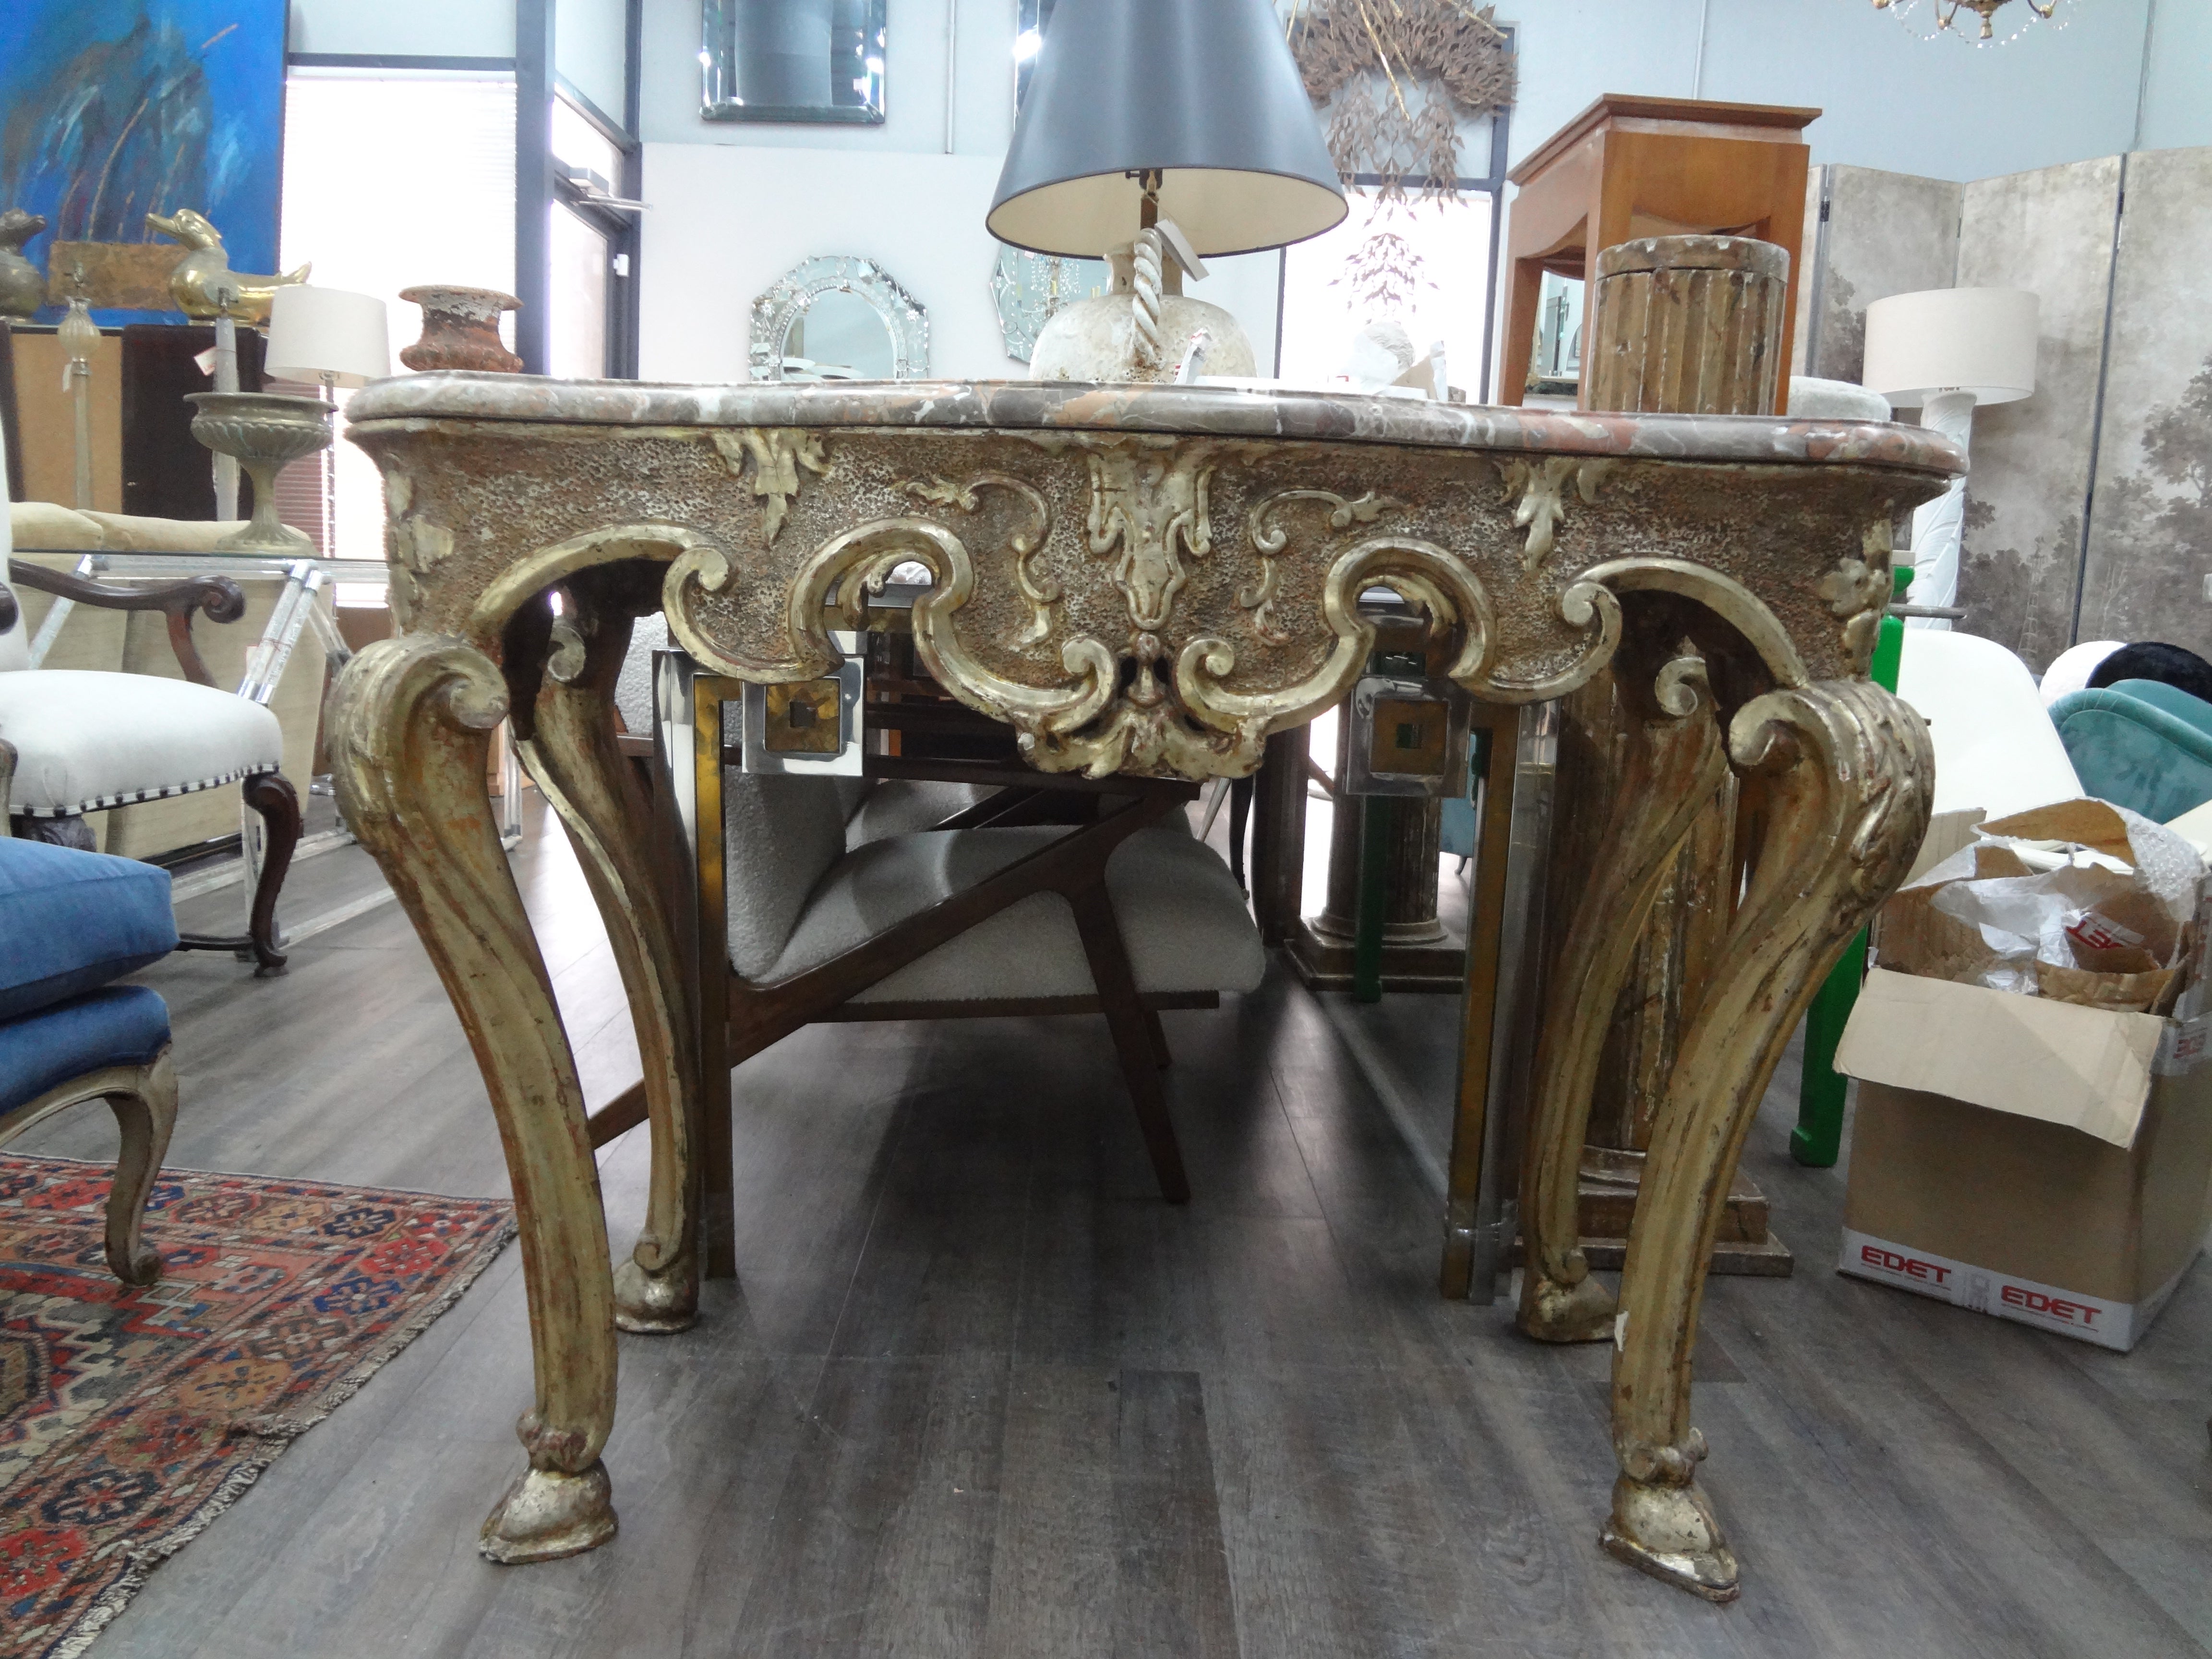 Table console italienne en bois doré du 17e siècle provenant de Naples.
Cette superbe console italienne ancienne en bois doré napolitain est indépendante et ferait sensation dans un hall d'entrée, un salon ou une salle à manger.
Superbe patine !